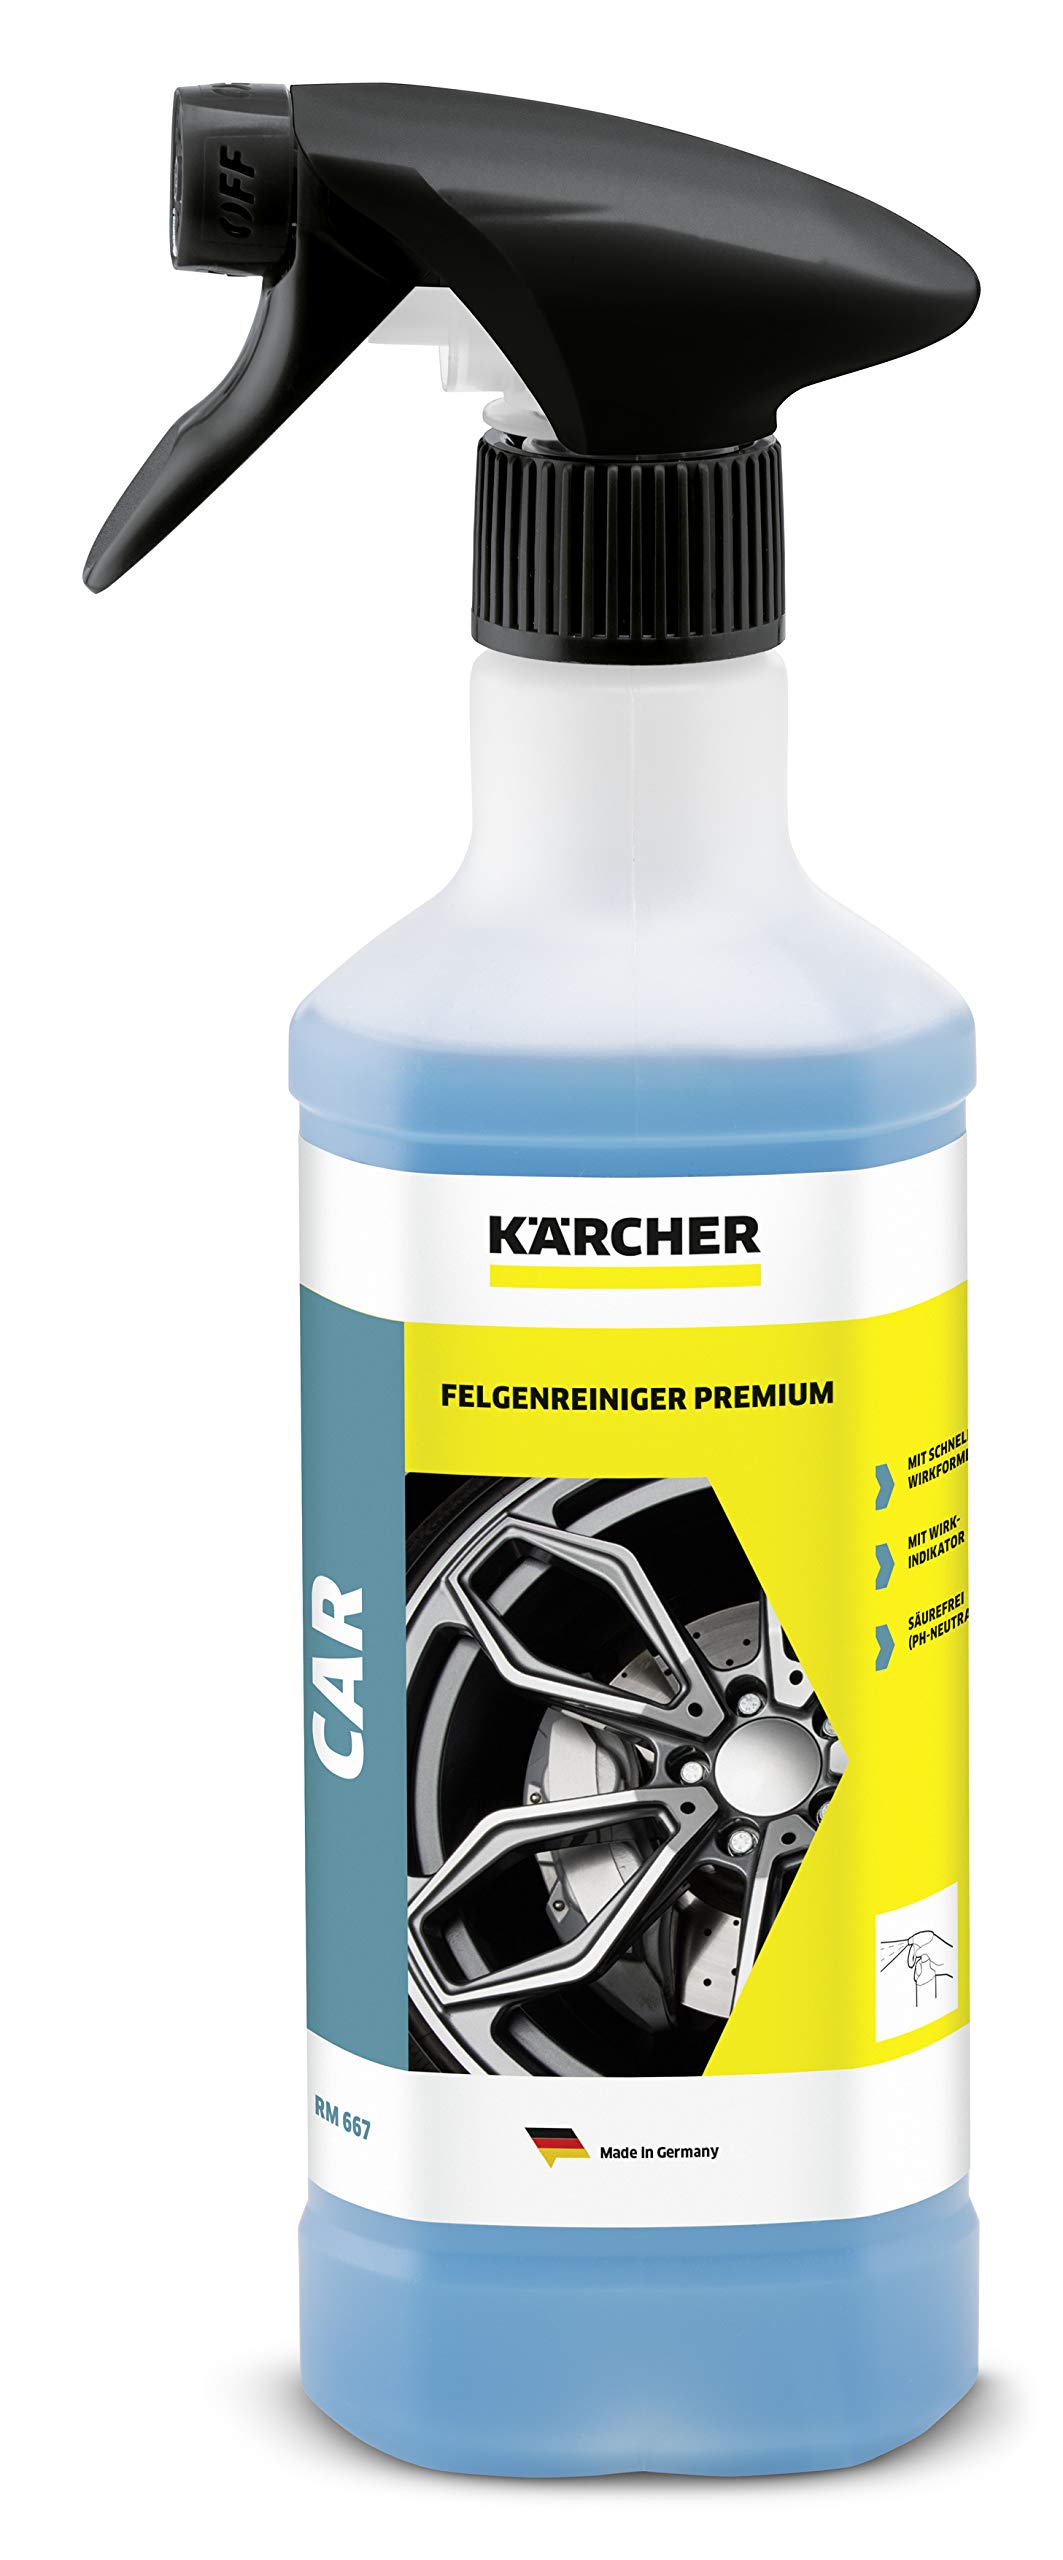 Kärcher Felgenreiniger Premium RM 667 (500 ml), mit höchster Reinigungskraft und Schnellwirkformel gegen Straßenverschmutzungen von Kärcher